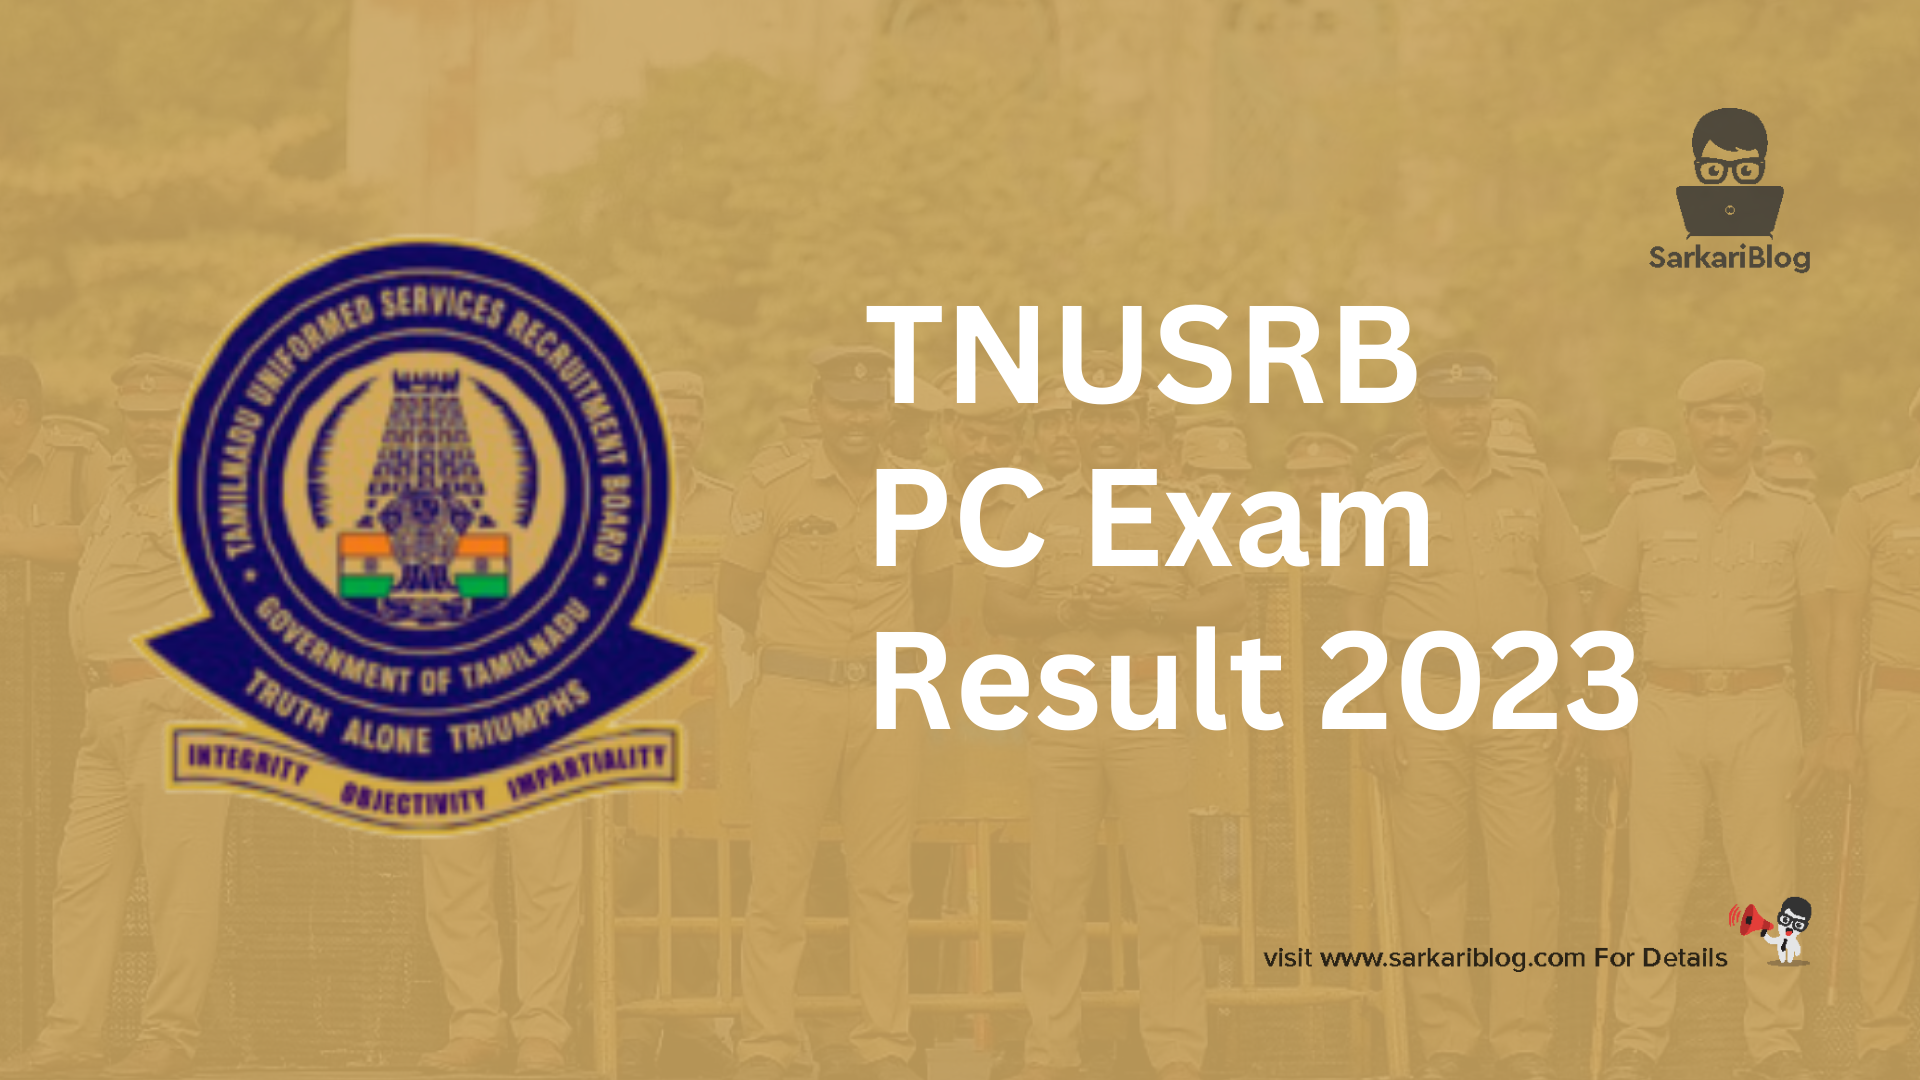 TNUSRB PC Exam Result 2023